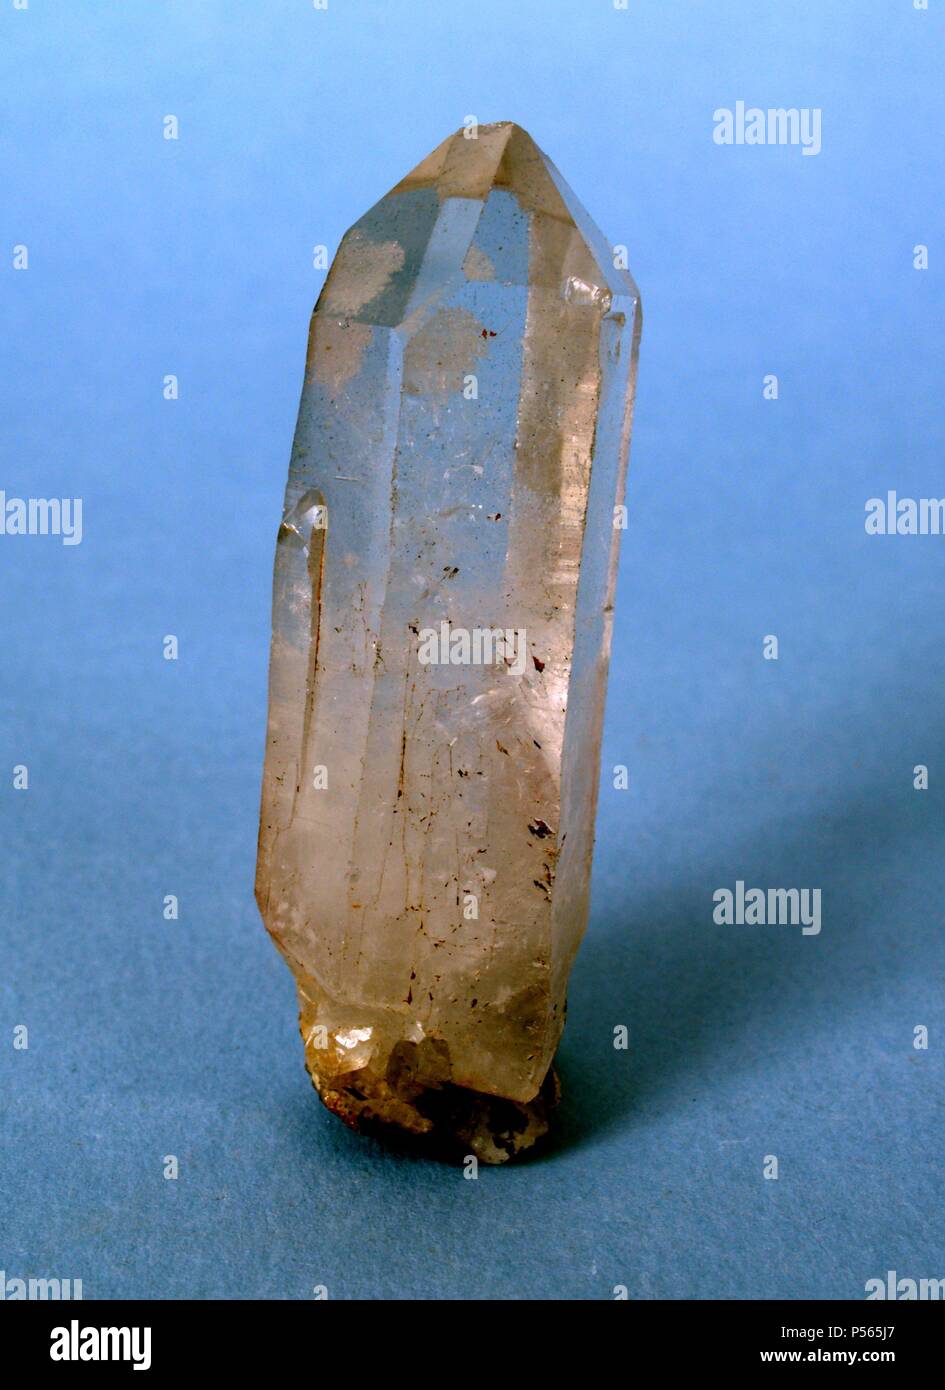 CUARZO HIALINO. Mineral muy difundido en la naturaleza, constituido por  bióxido de silicio. Cristales de forma prismática Stock Photo - Alamy